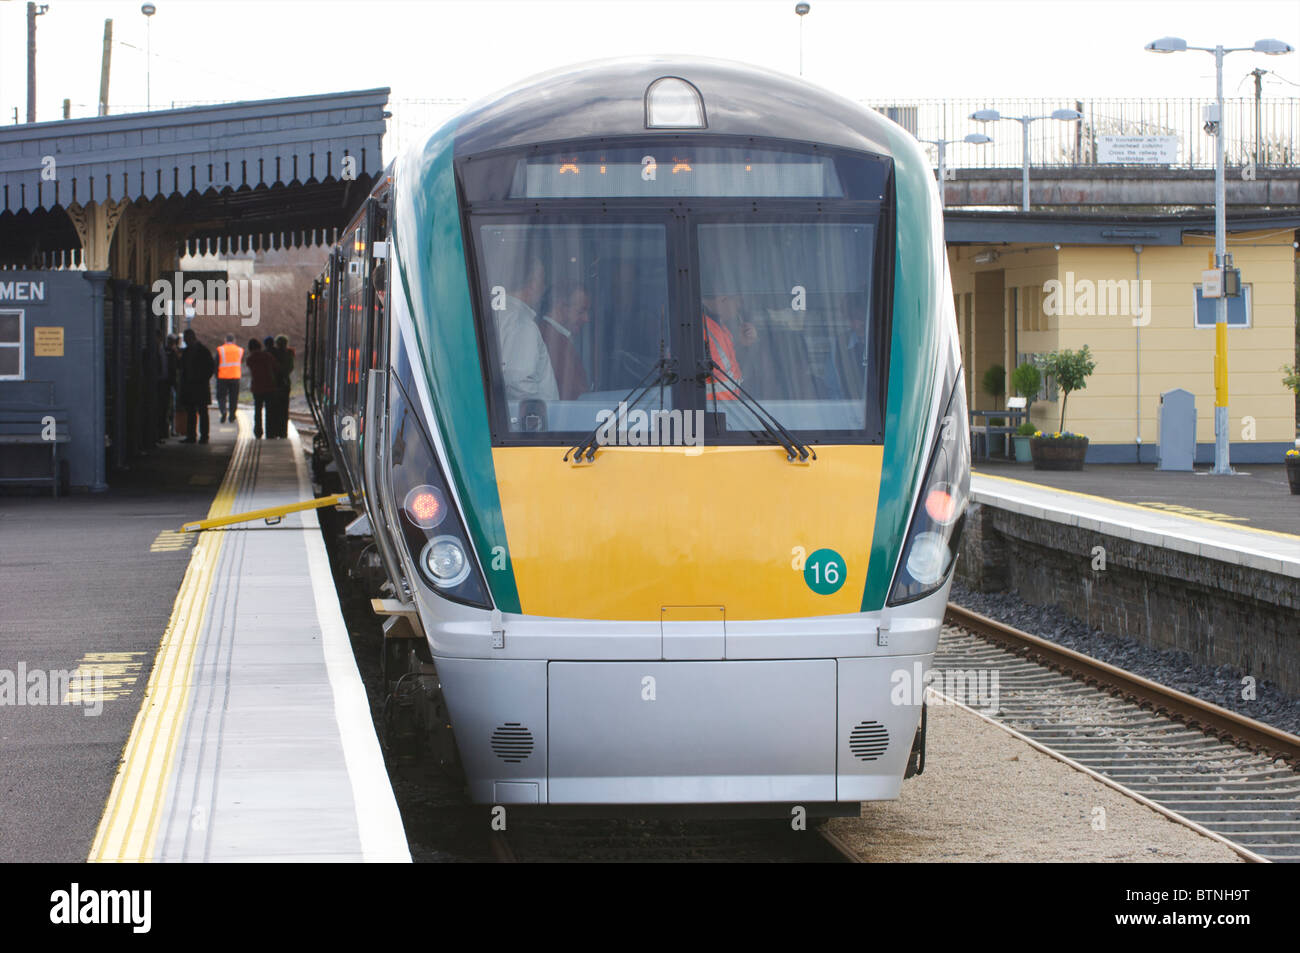 Ein Irish Rail Zug stehen auf dem Bahnsteig am Bahnhof Claremorris, Co. Mayo, Irland Stockfoto